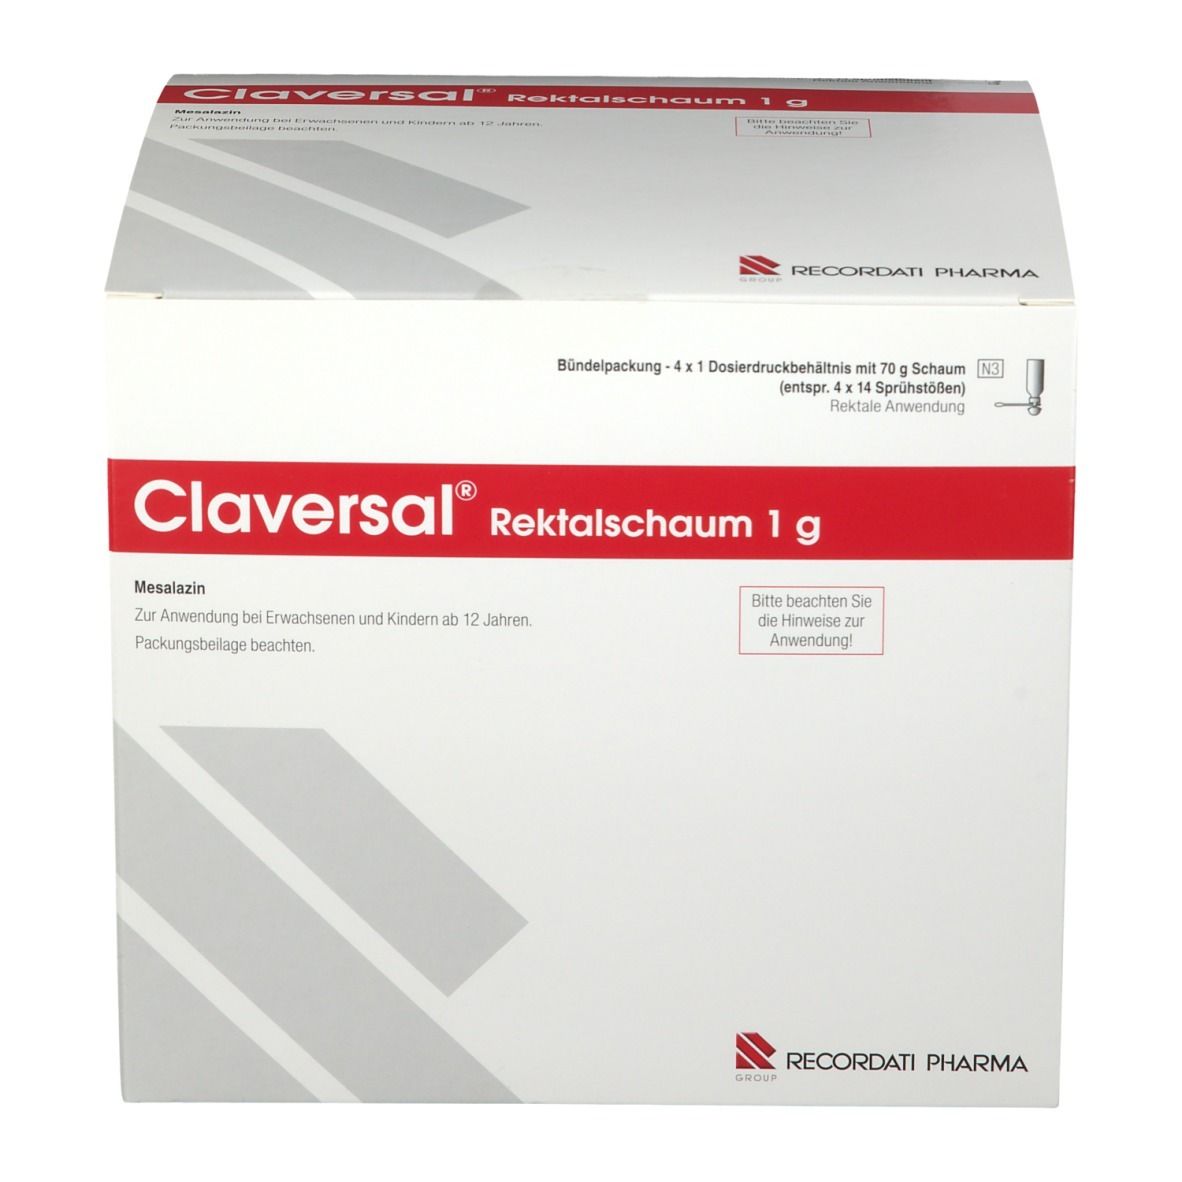 Claversal® Rektalschaum 1 g